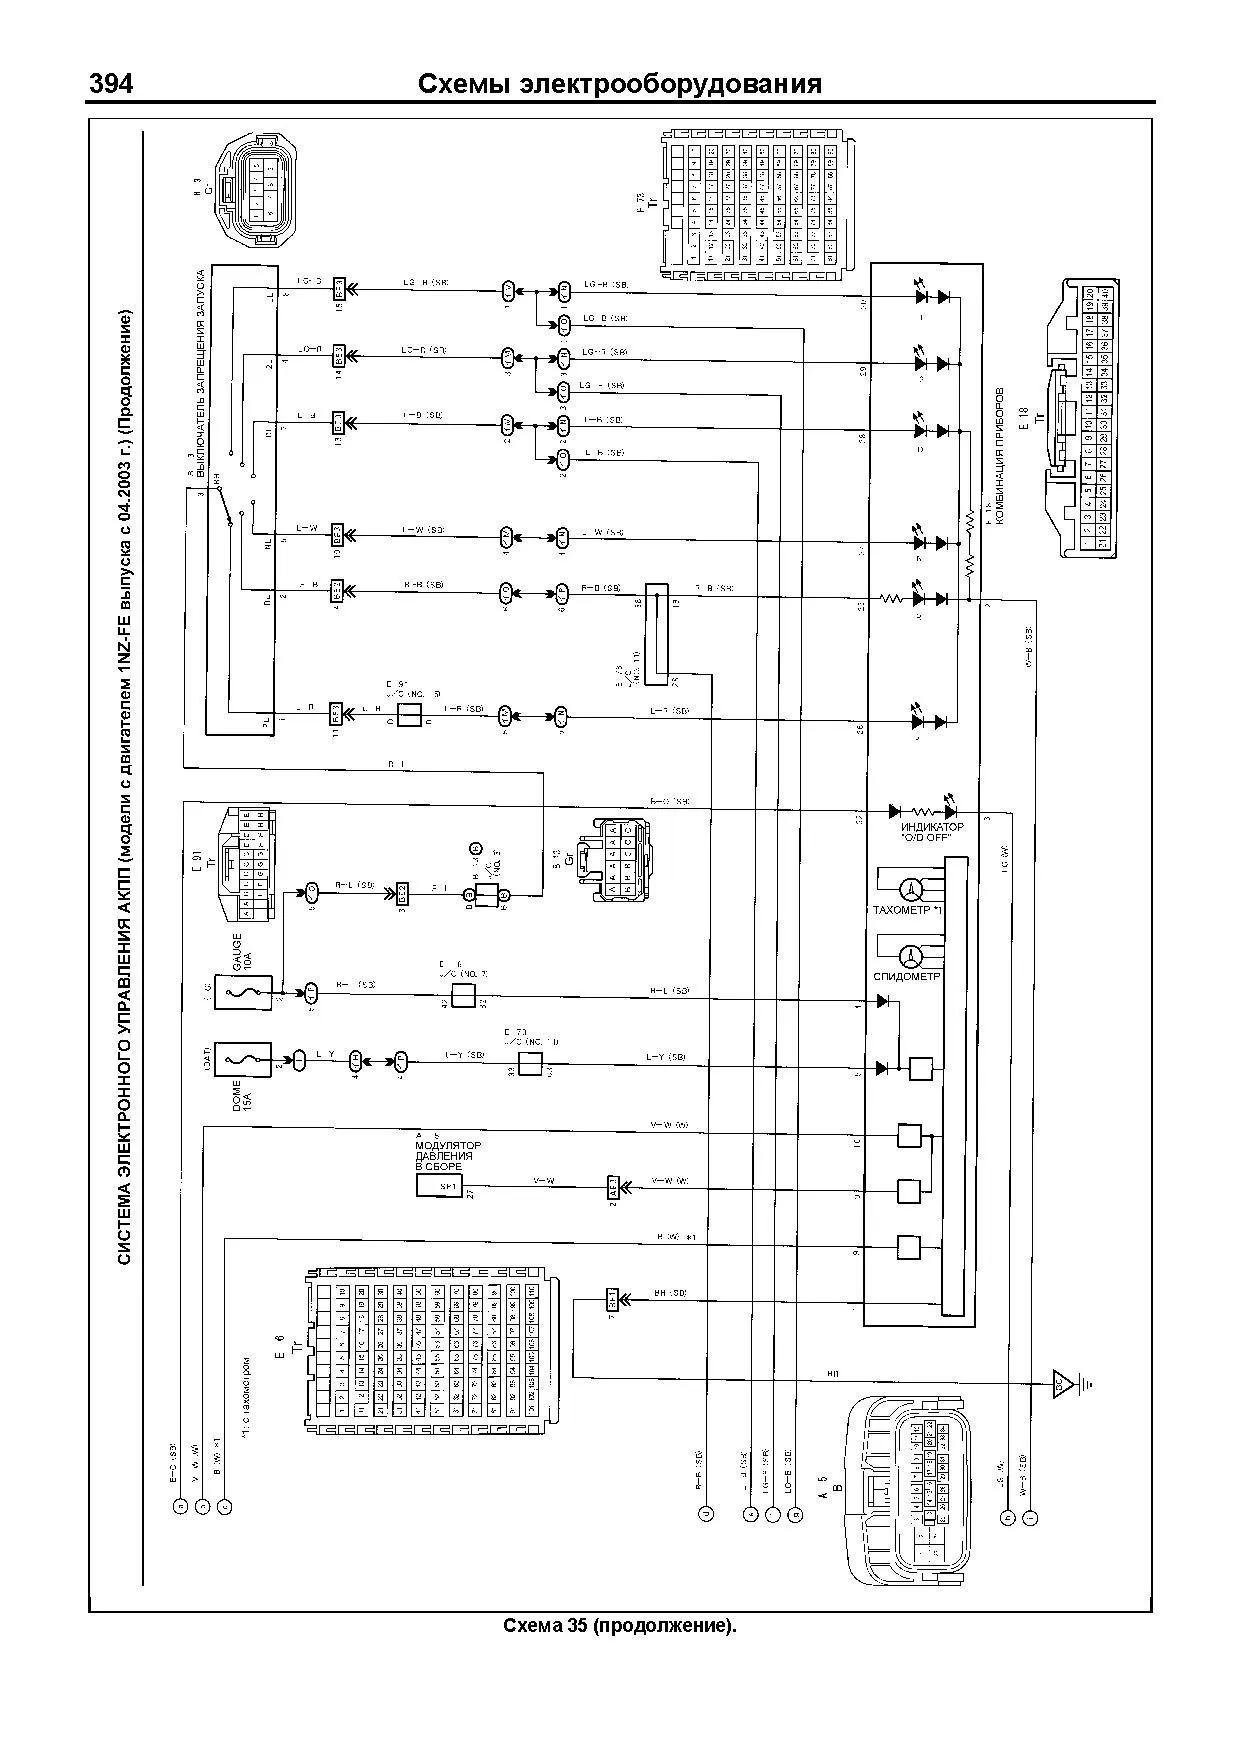 Книга Toyota Corolla Spacio 2001-2007 бензин, электросхемы, каталог з/ч. Руководство по ремонту и эксплуатации автомобиля. Профессионал. Легион-Aвтодата